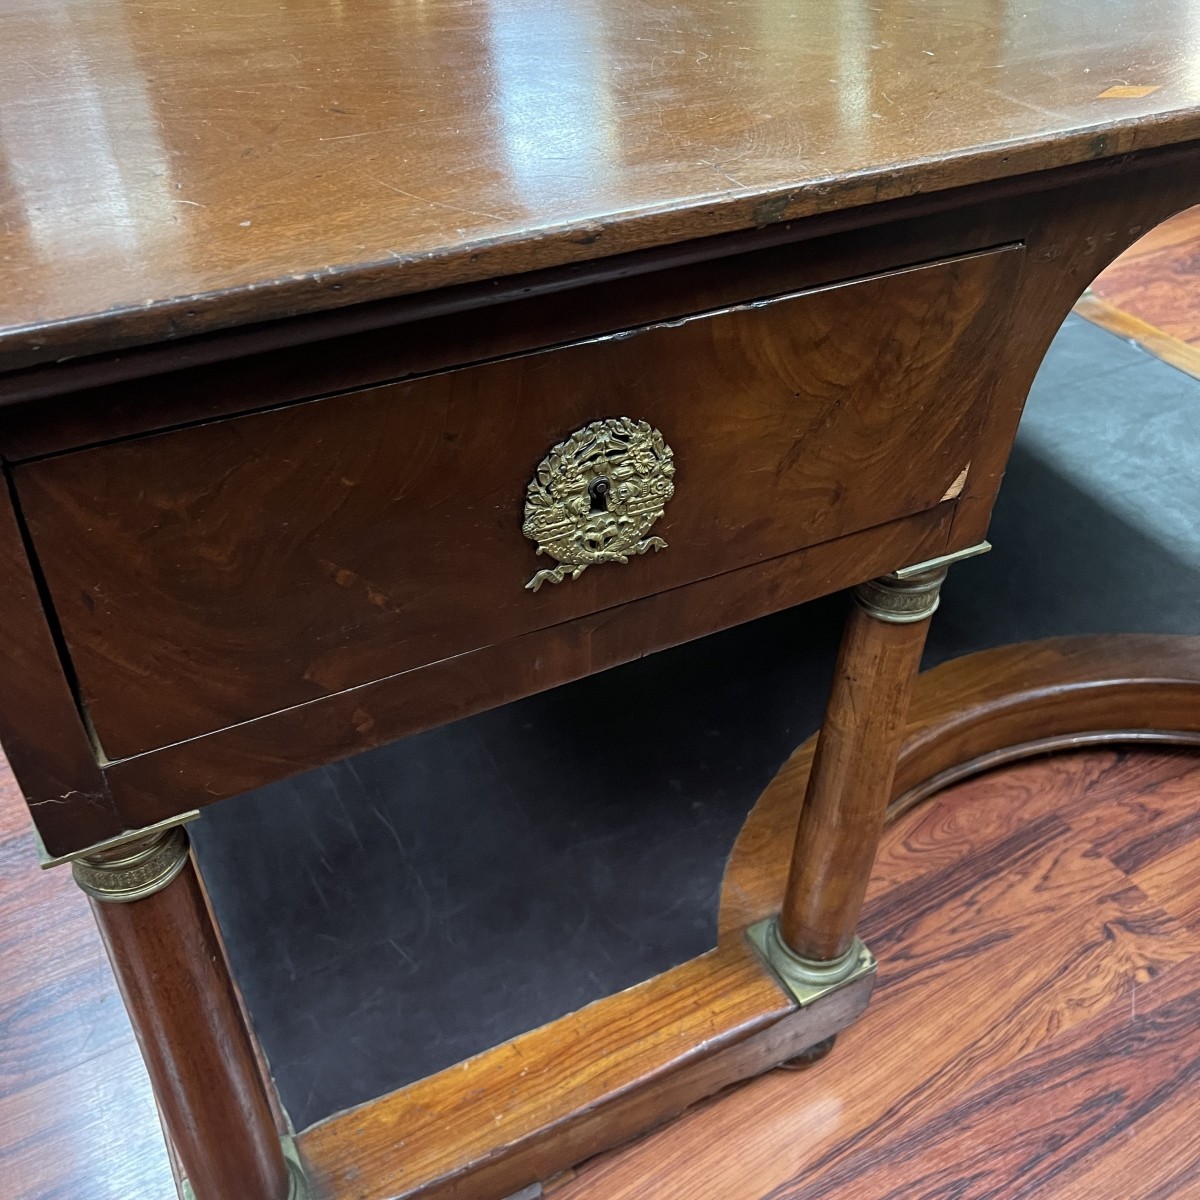 Circa 1820s French Empire Partner's Desk